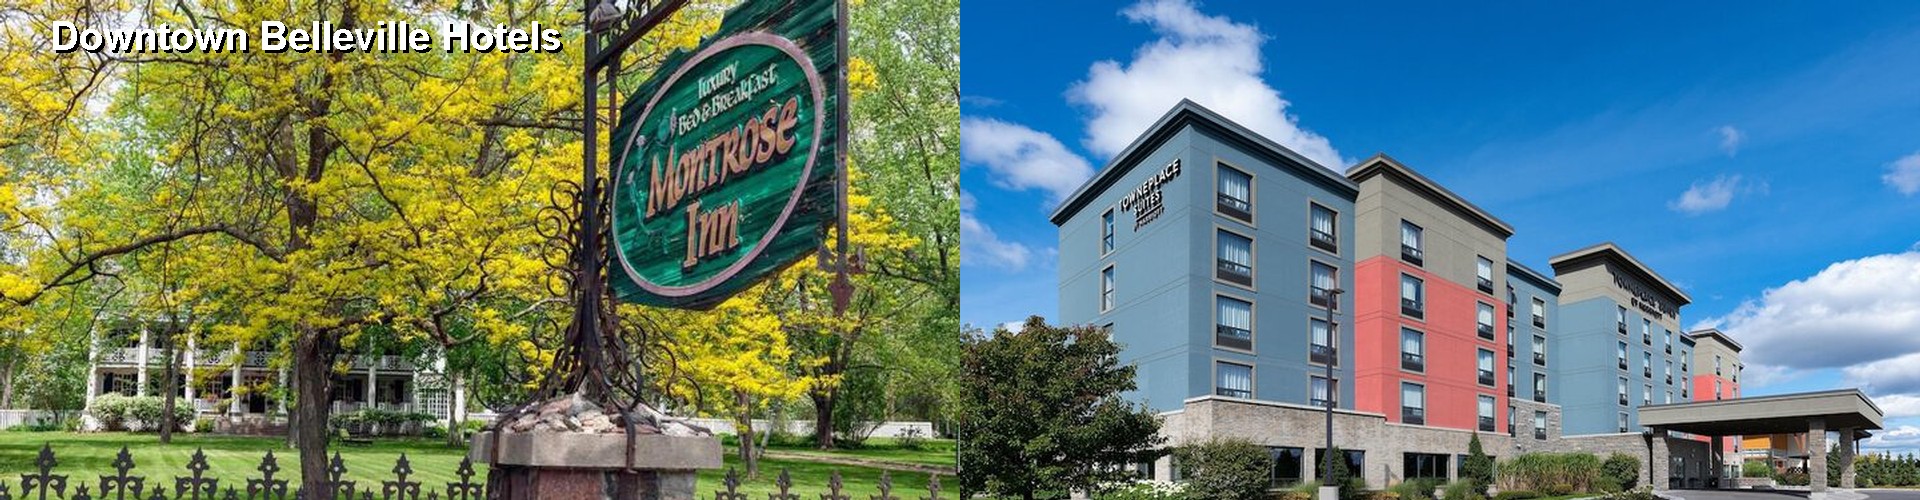 5 Best Hotels near Downtown Belleville